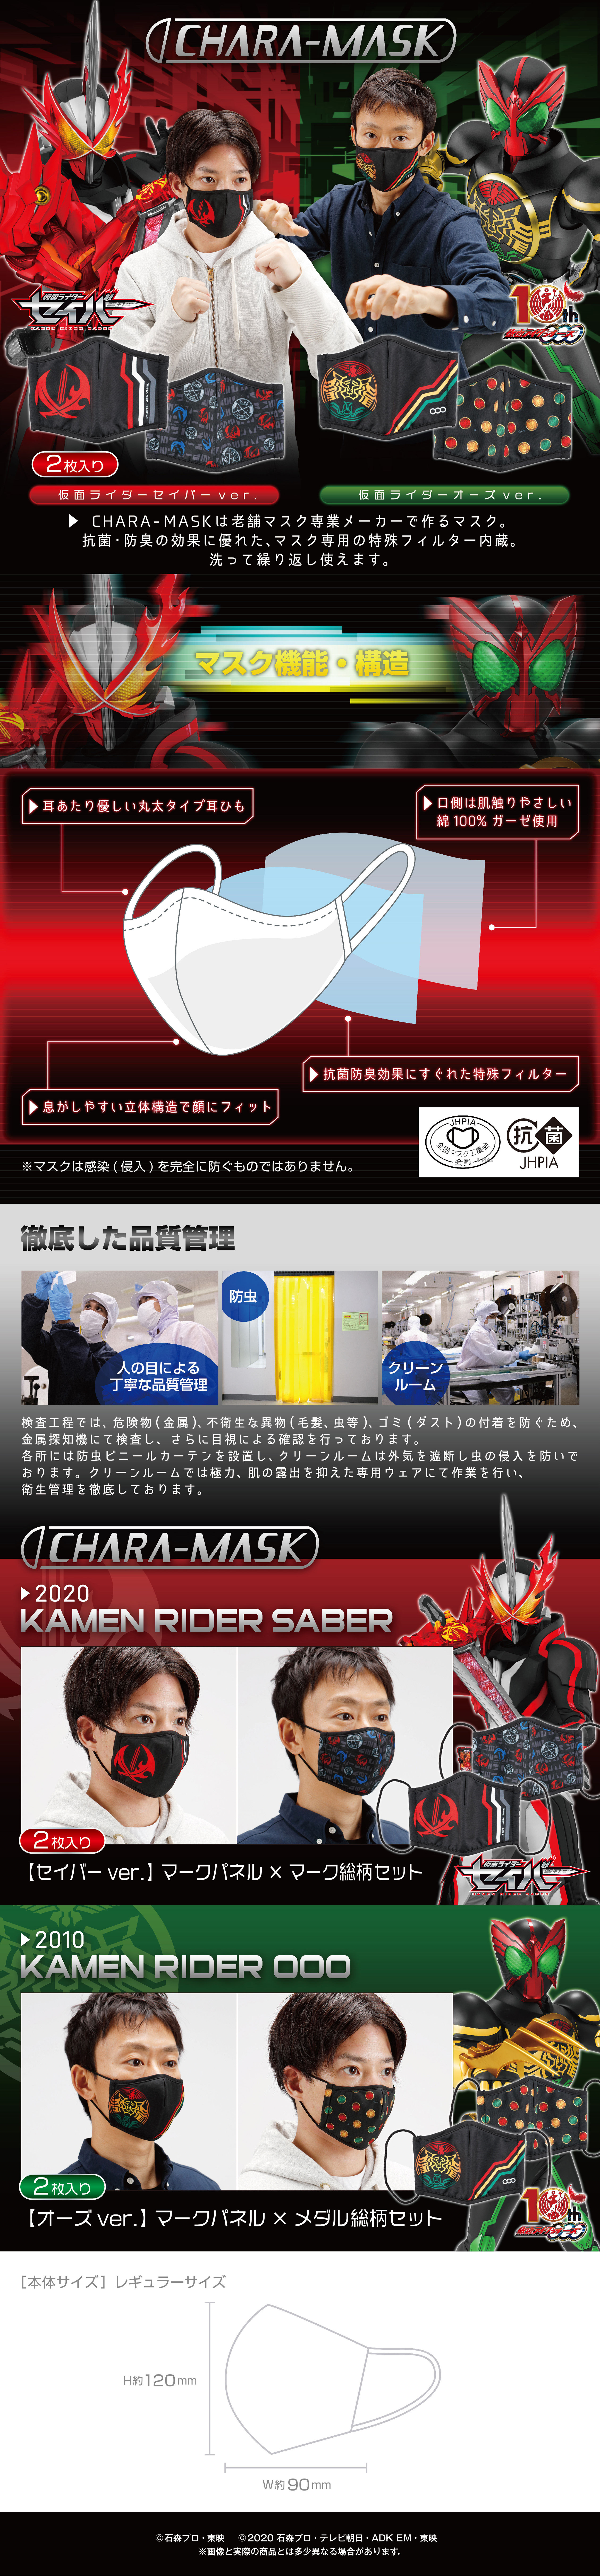 Chara Mask 仮面ライダーシリーズ 仮面ライダーシリーズ ファッション アクセサリー バンダイナムコグループ公式通販サイト